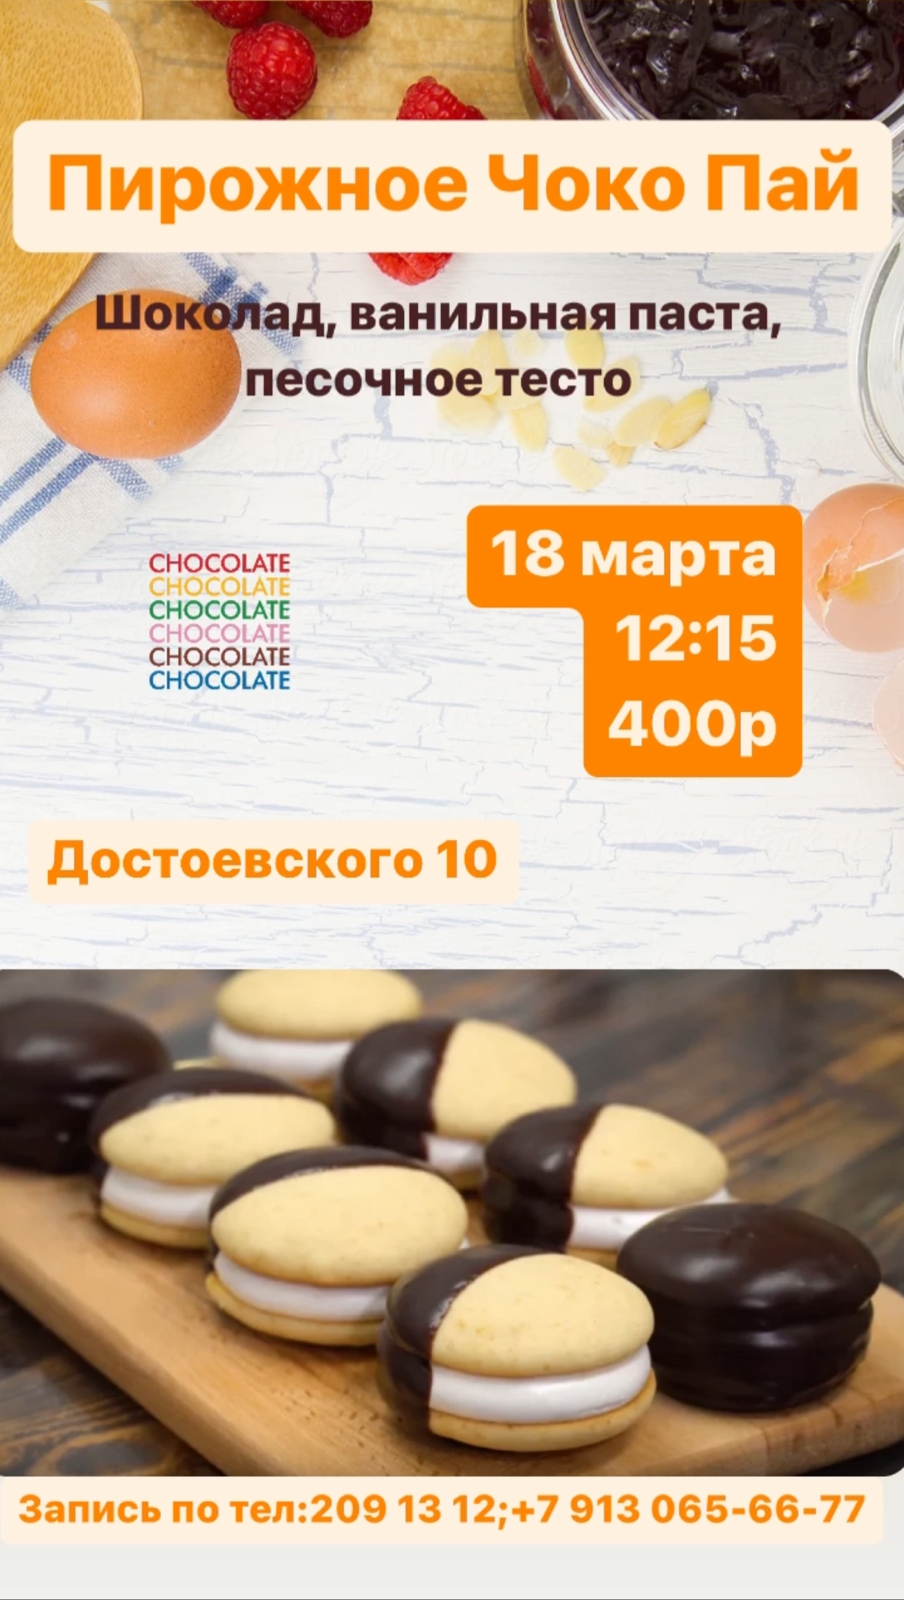 Мастер класс: Пирожное Чоко Пай в субботу, 18 марта в 12.15